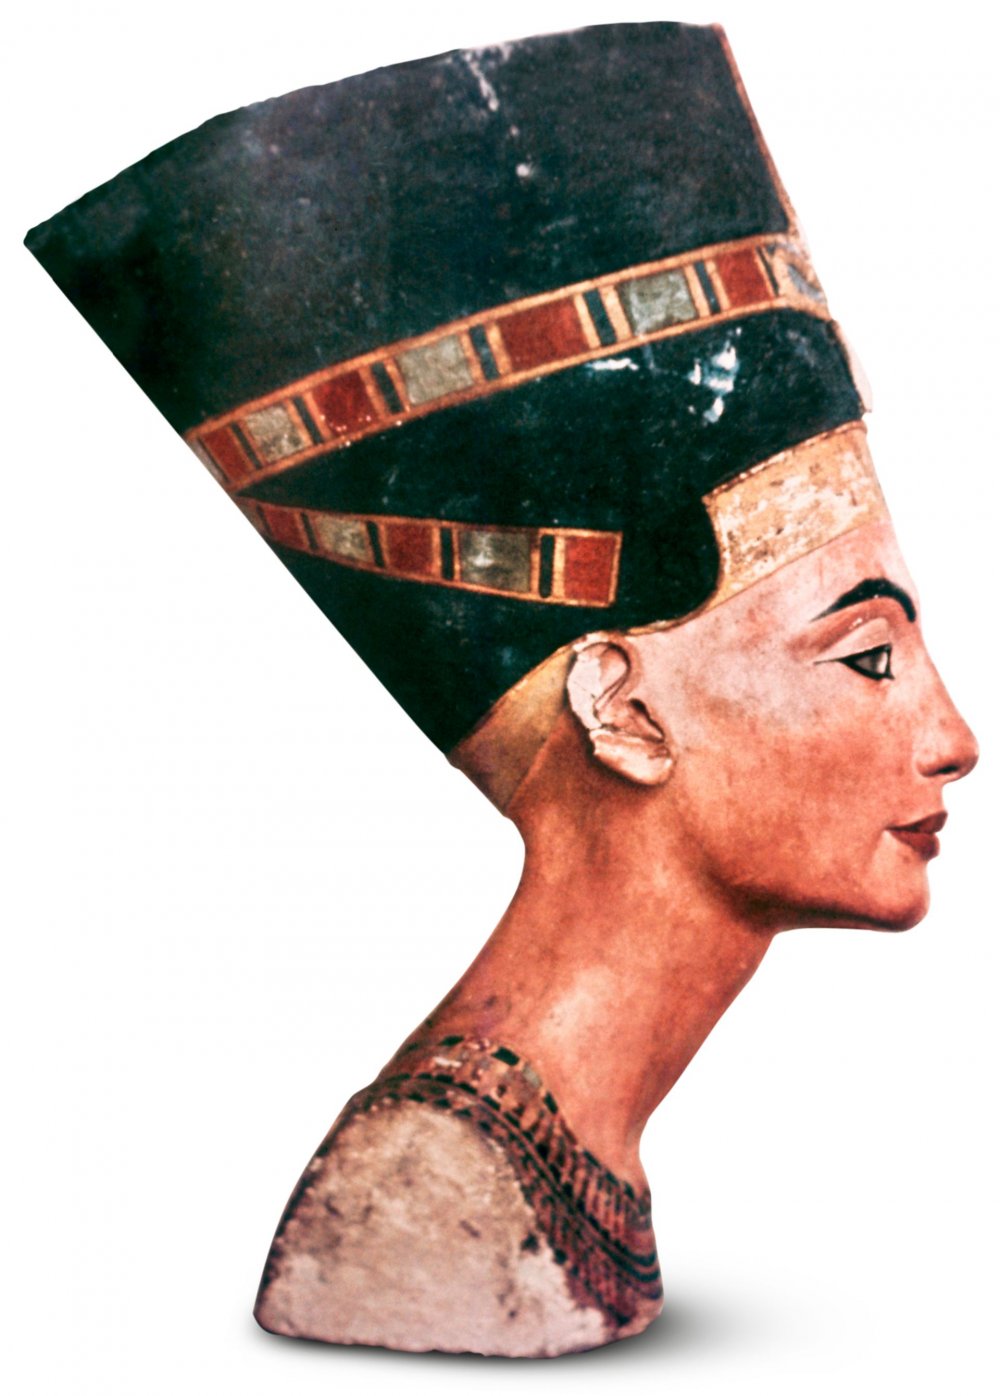 Бюст царицы Нефертити